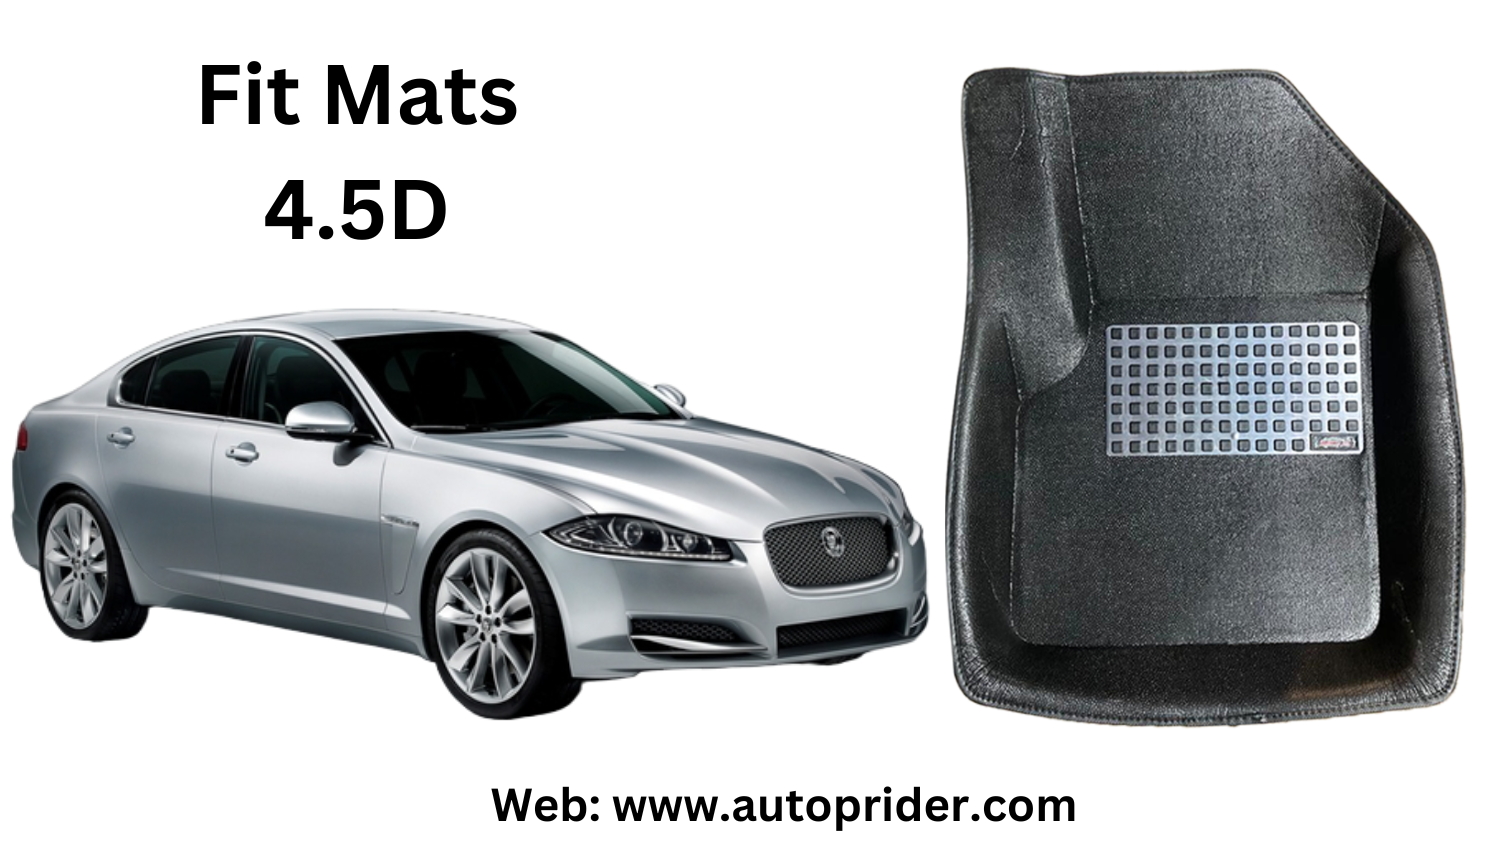 Autoprider | Fit Mats 4.5D Economy Car Mats for Jaguar SF